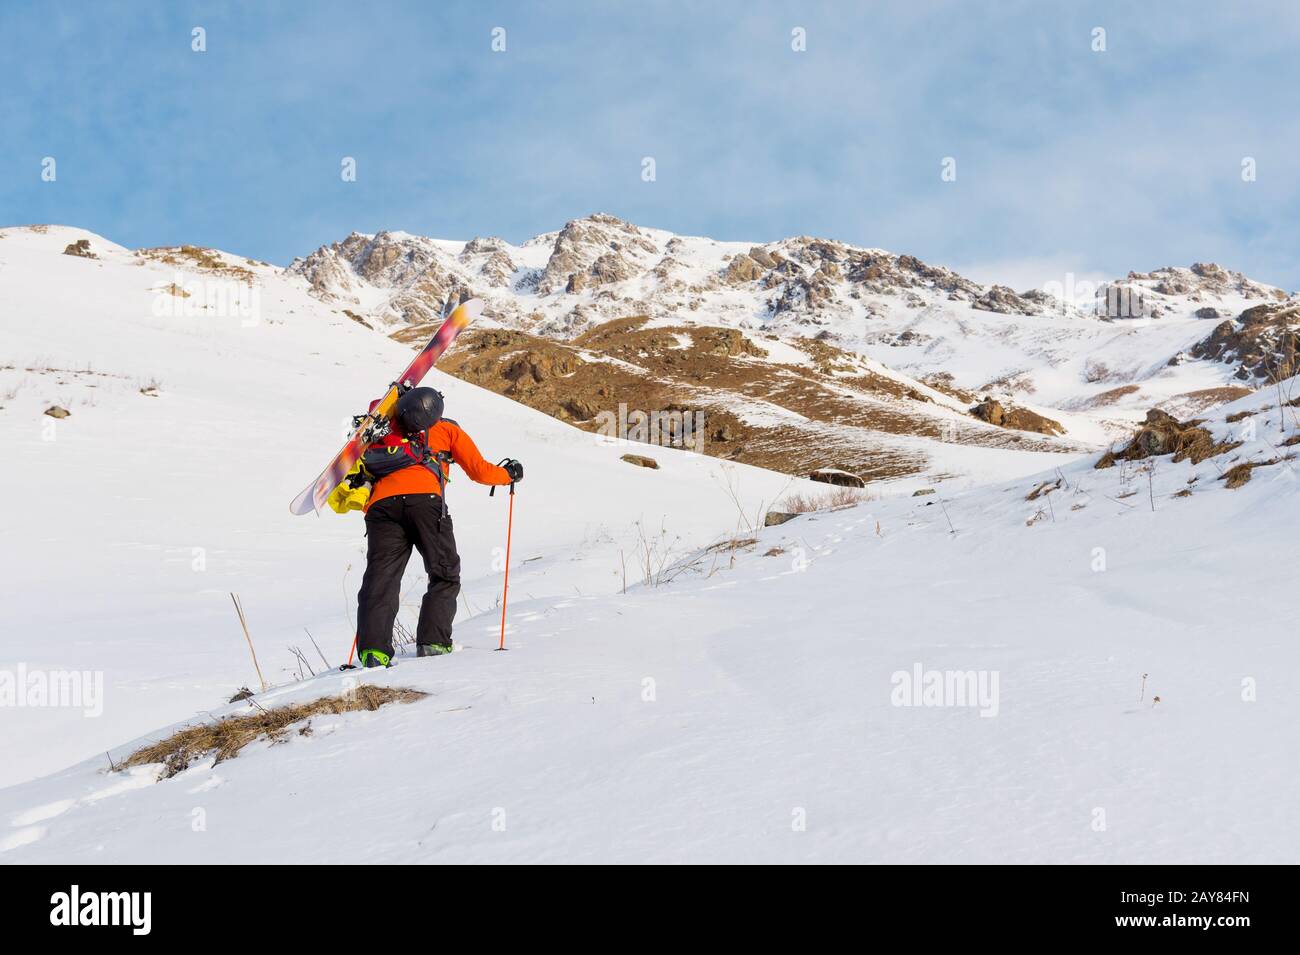 le freerider de ski monte la pente en poudre de neige profonde avec l'équipement à l'arrière fixé sur le sac à dos. Banque D'Images